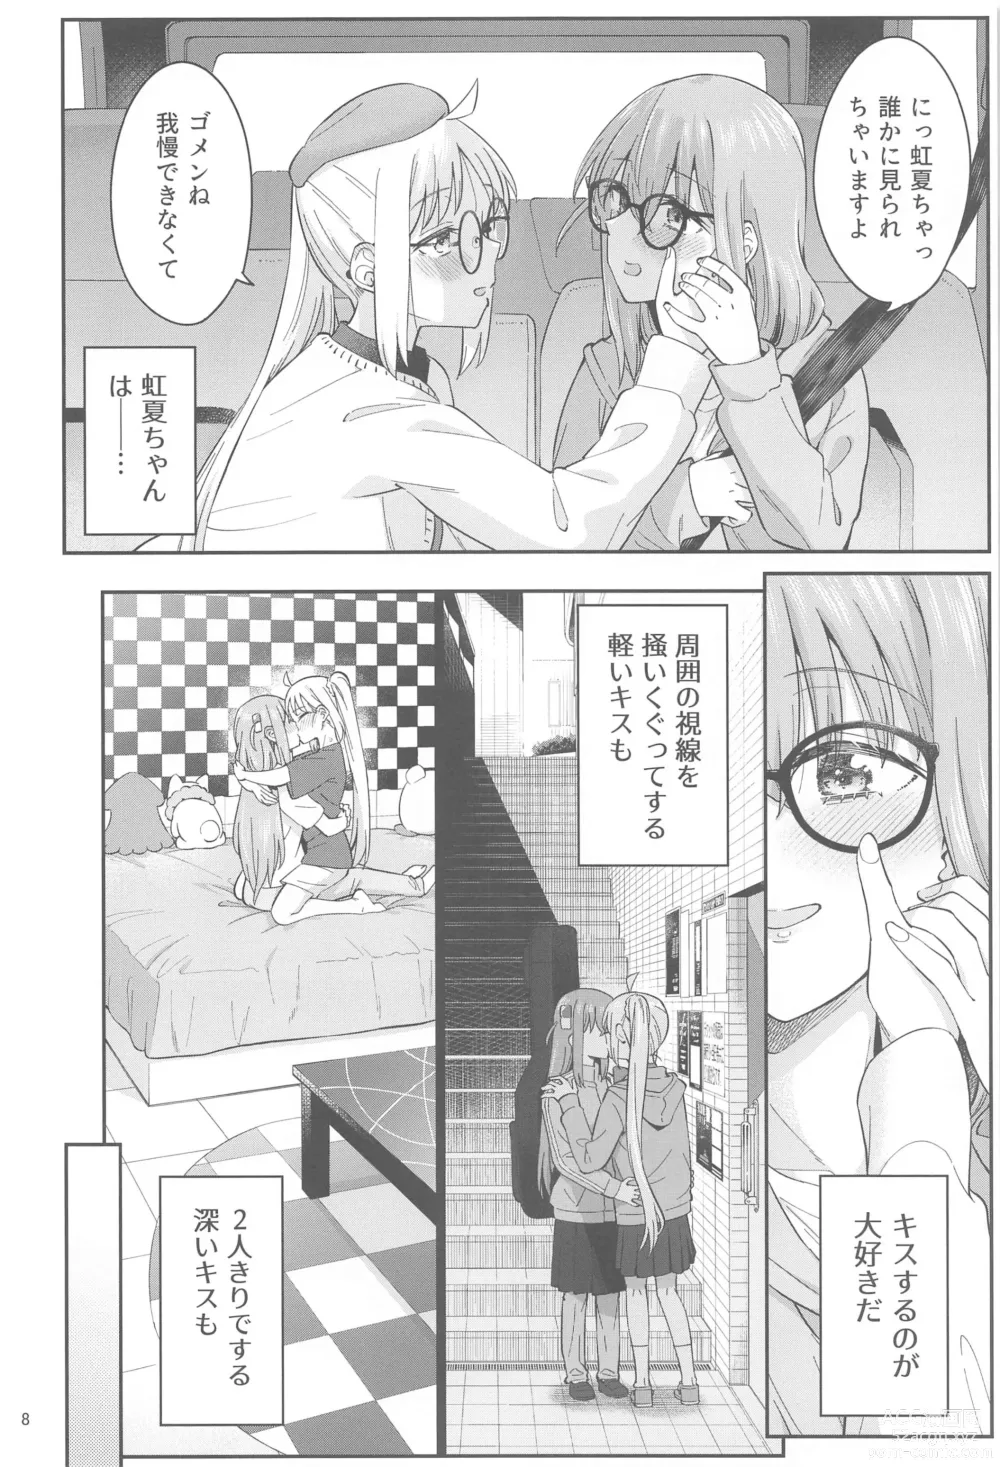 Page 7 of doujinshi Netsu o Mazete Shin o Tokashite